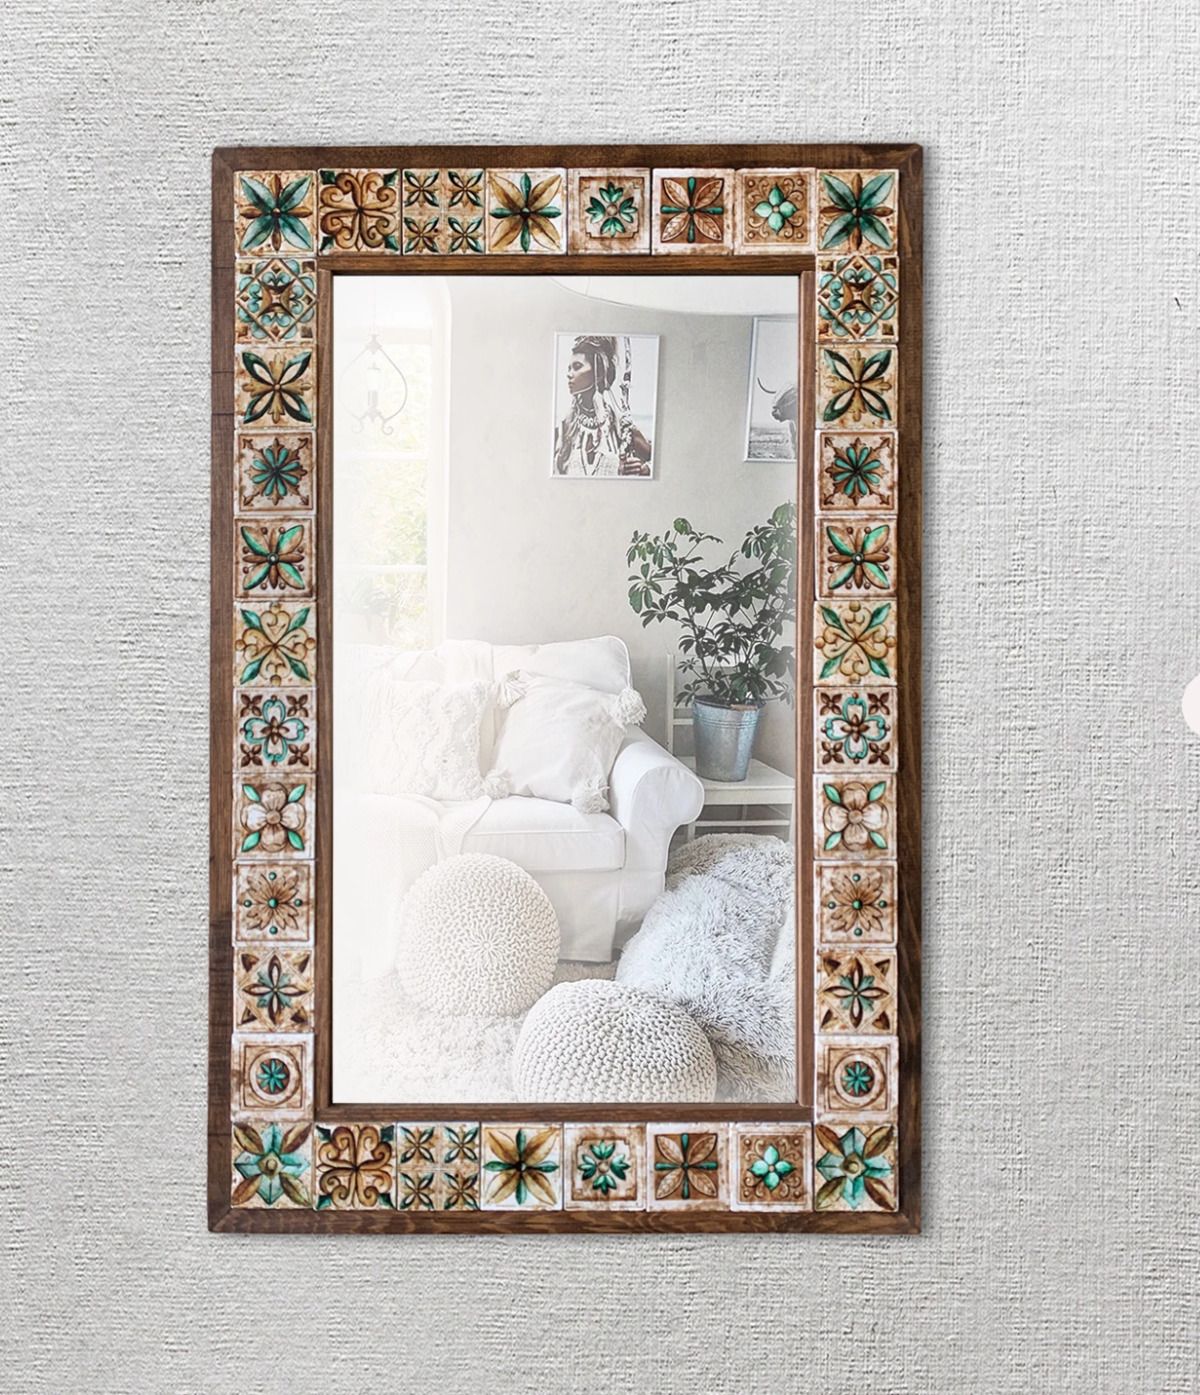 Pinecone Mozaik Taş Duvar Aynası, Ahşap Çerçeveli Dekoratif Ayna, Salon Konsol Aynası, Wall Mirror Mrr4-25